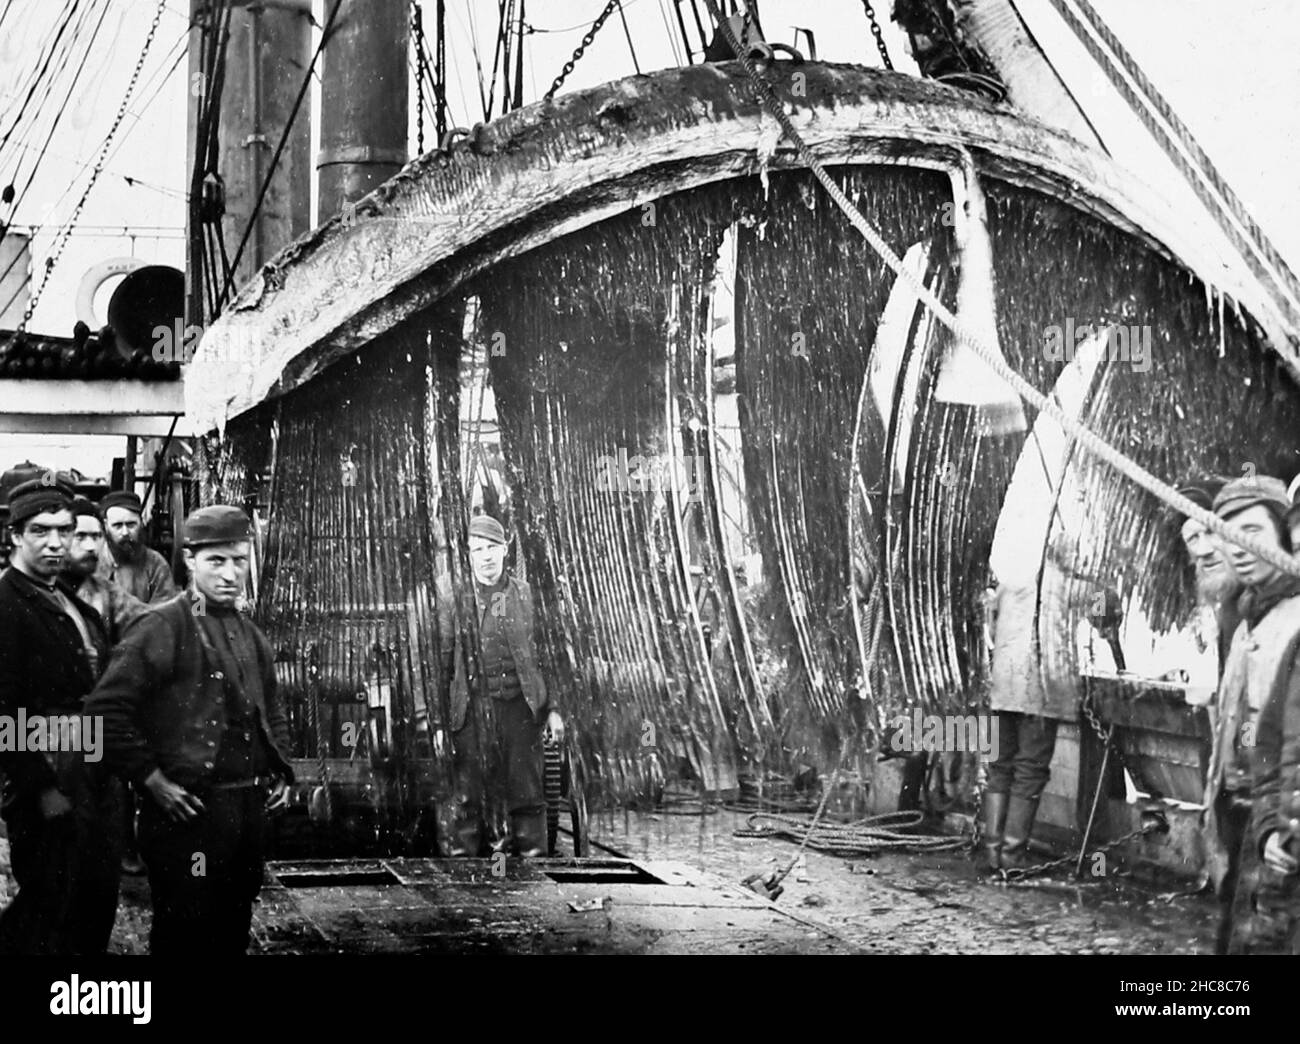 Taglio di una carcassa di balena a bordo di una nave da caccia, periodo vittoriano Foto Stock